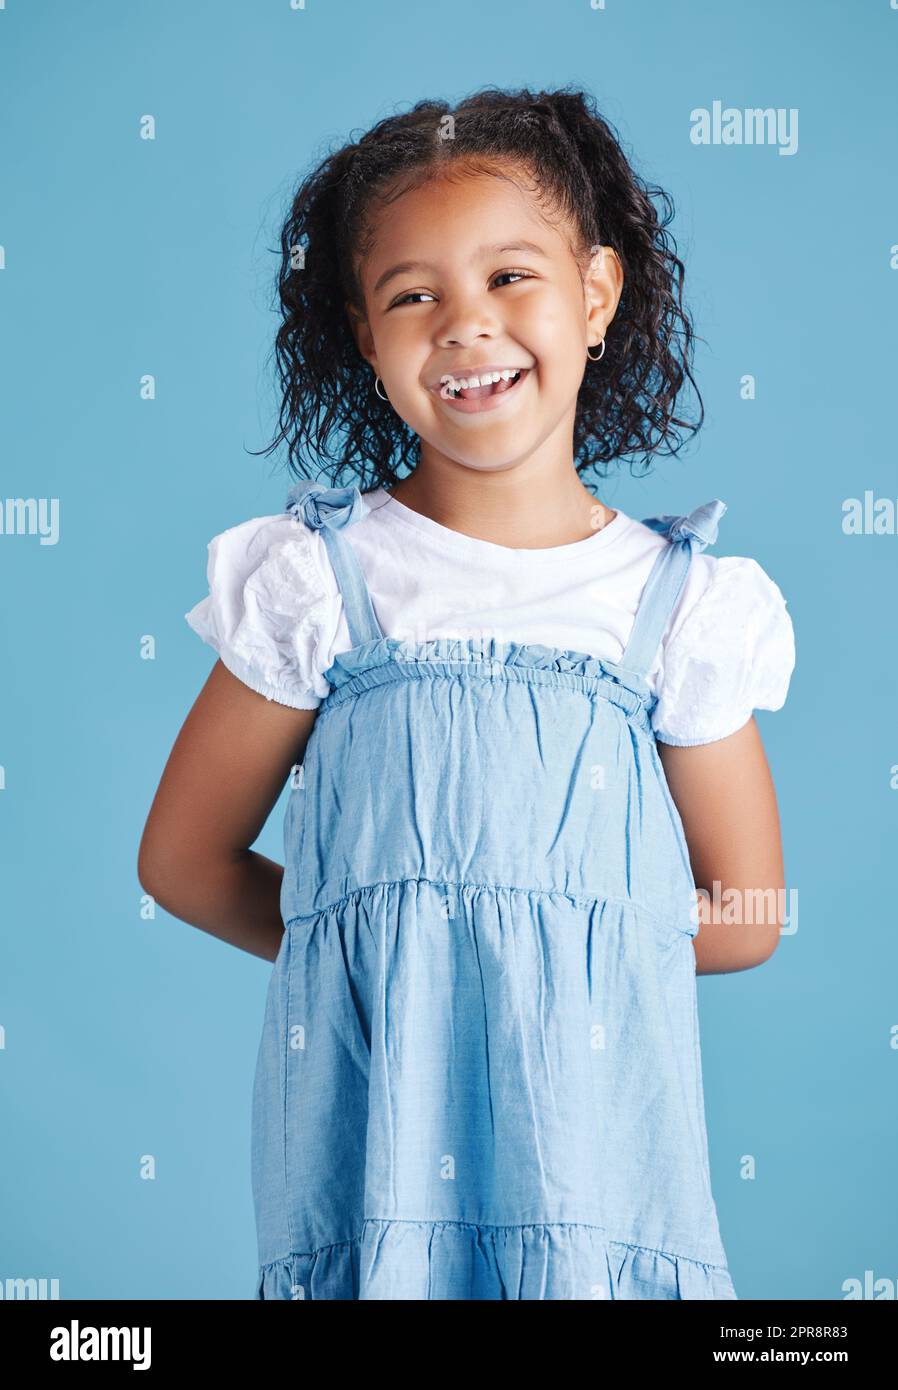 Fröhliches, lächelndes kleines Mädchen, das mit den Händen hinter dem Rücken vor blauem Studiohintergrund steht. Fröhliches Mischling-Kind in legerem Jeanskleid und weißem T-Shirt Stockfoto